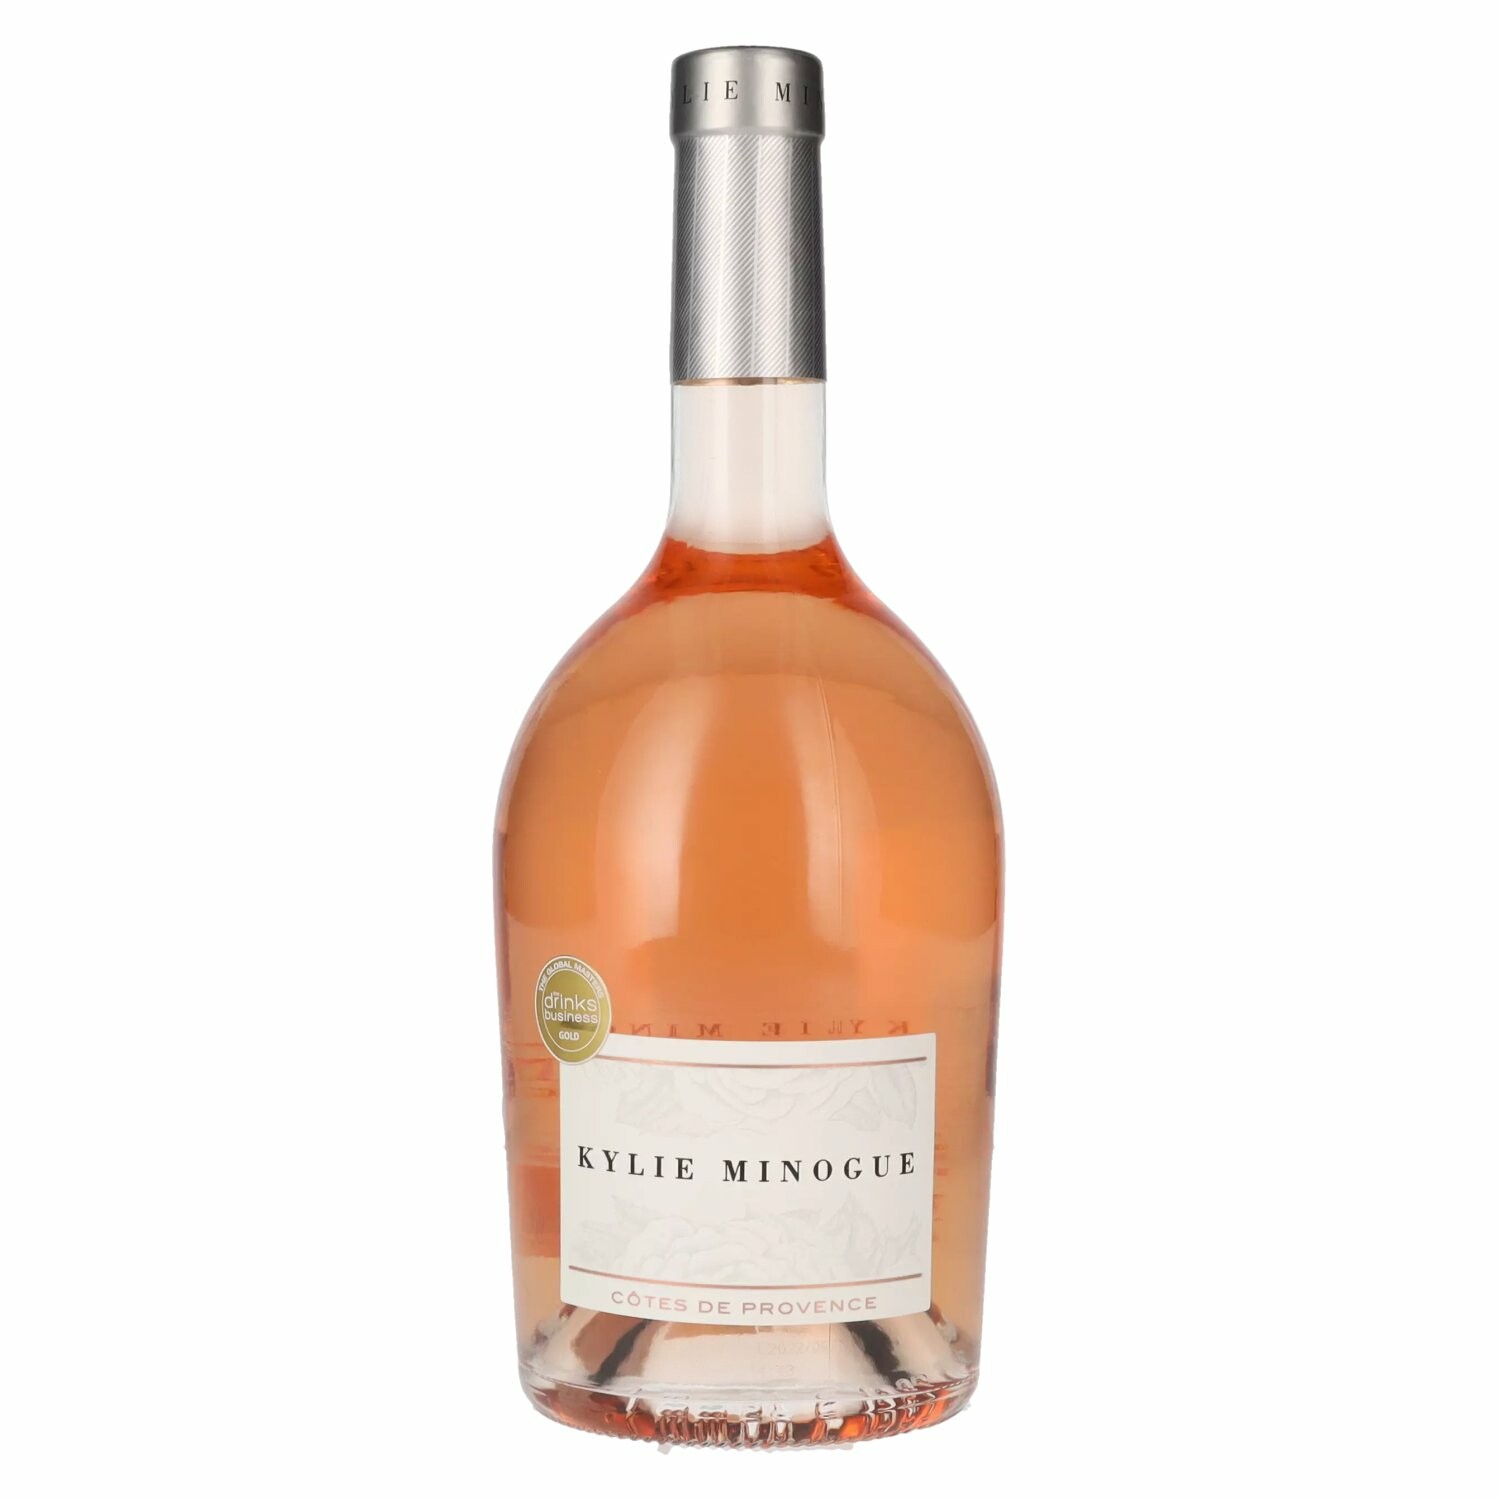 KYLIE MINOGUE Rosé Côtes des Provence 2021 12,5% Vol. 0,75l